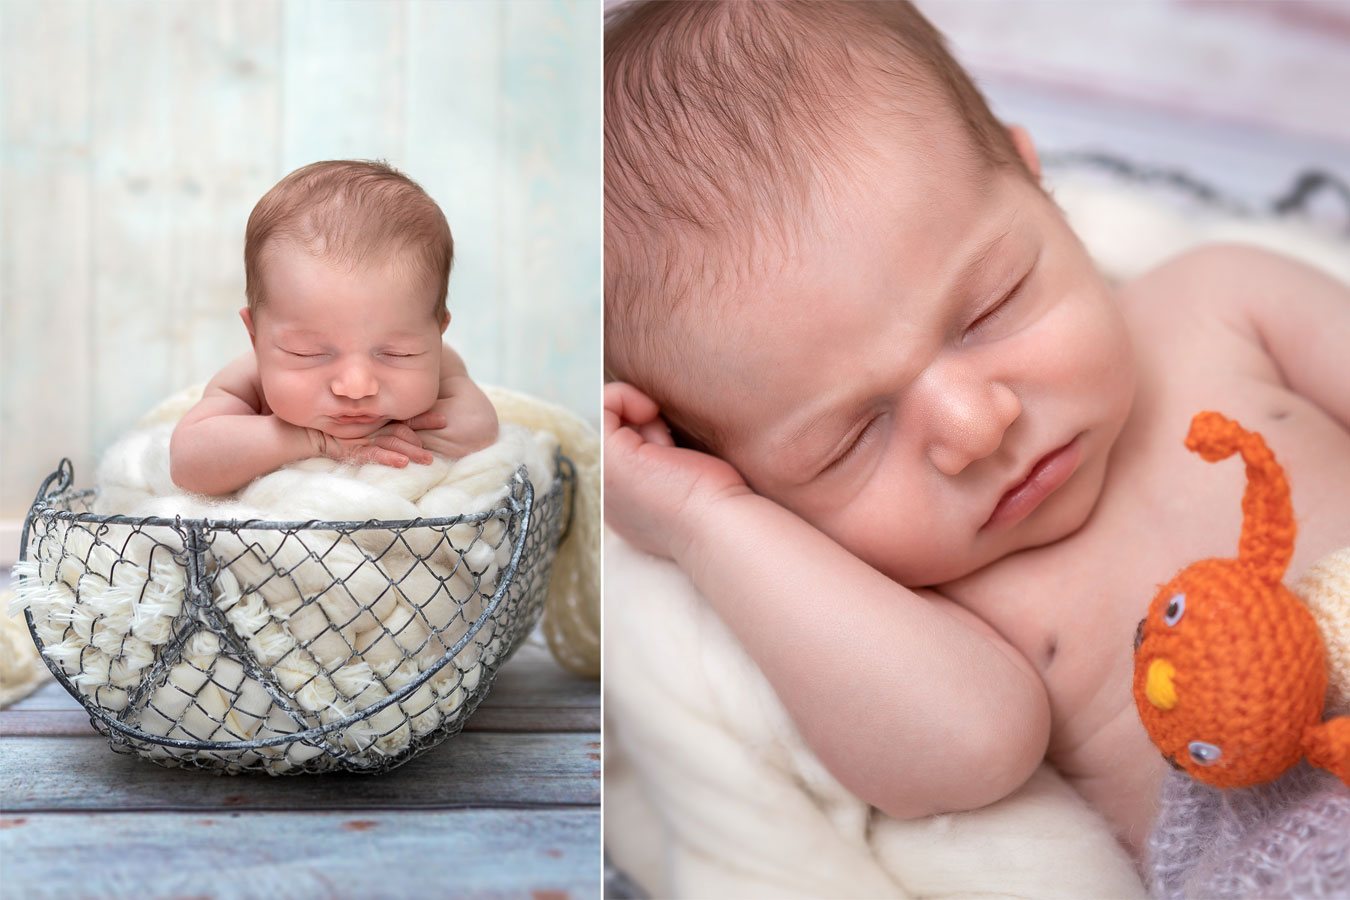 Fotostyle Schindler / Fotograf aus Straubing / Newborn / Babyfotografie / Newbornfotograf